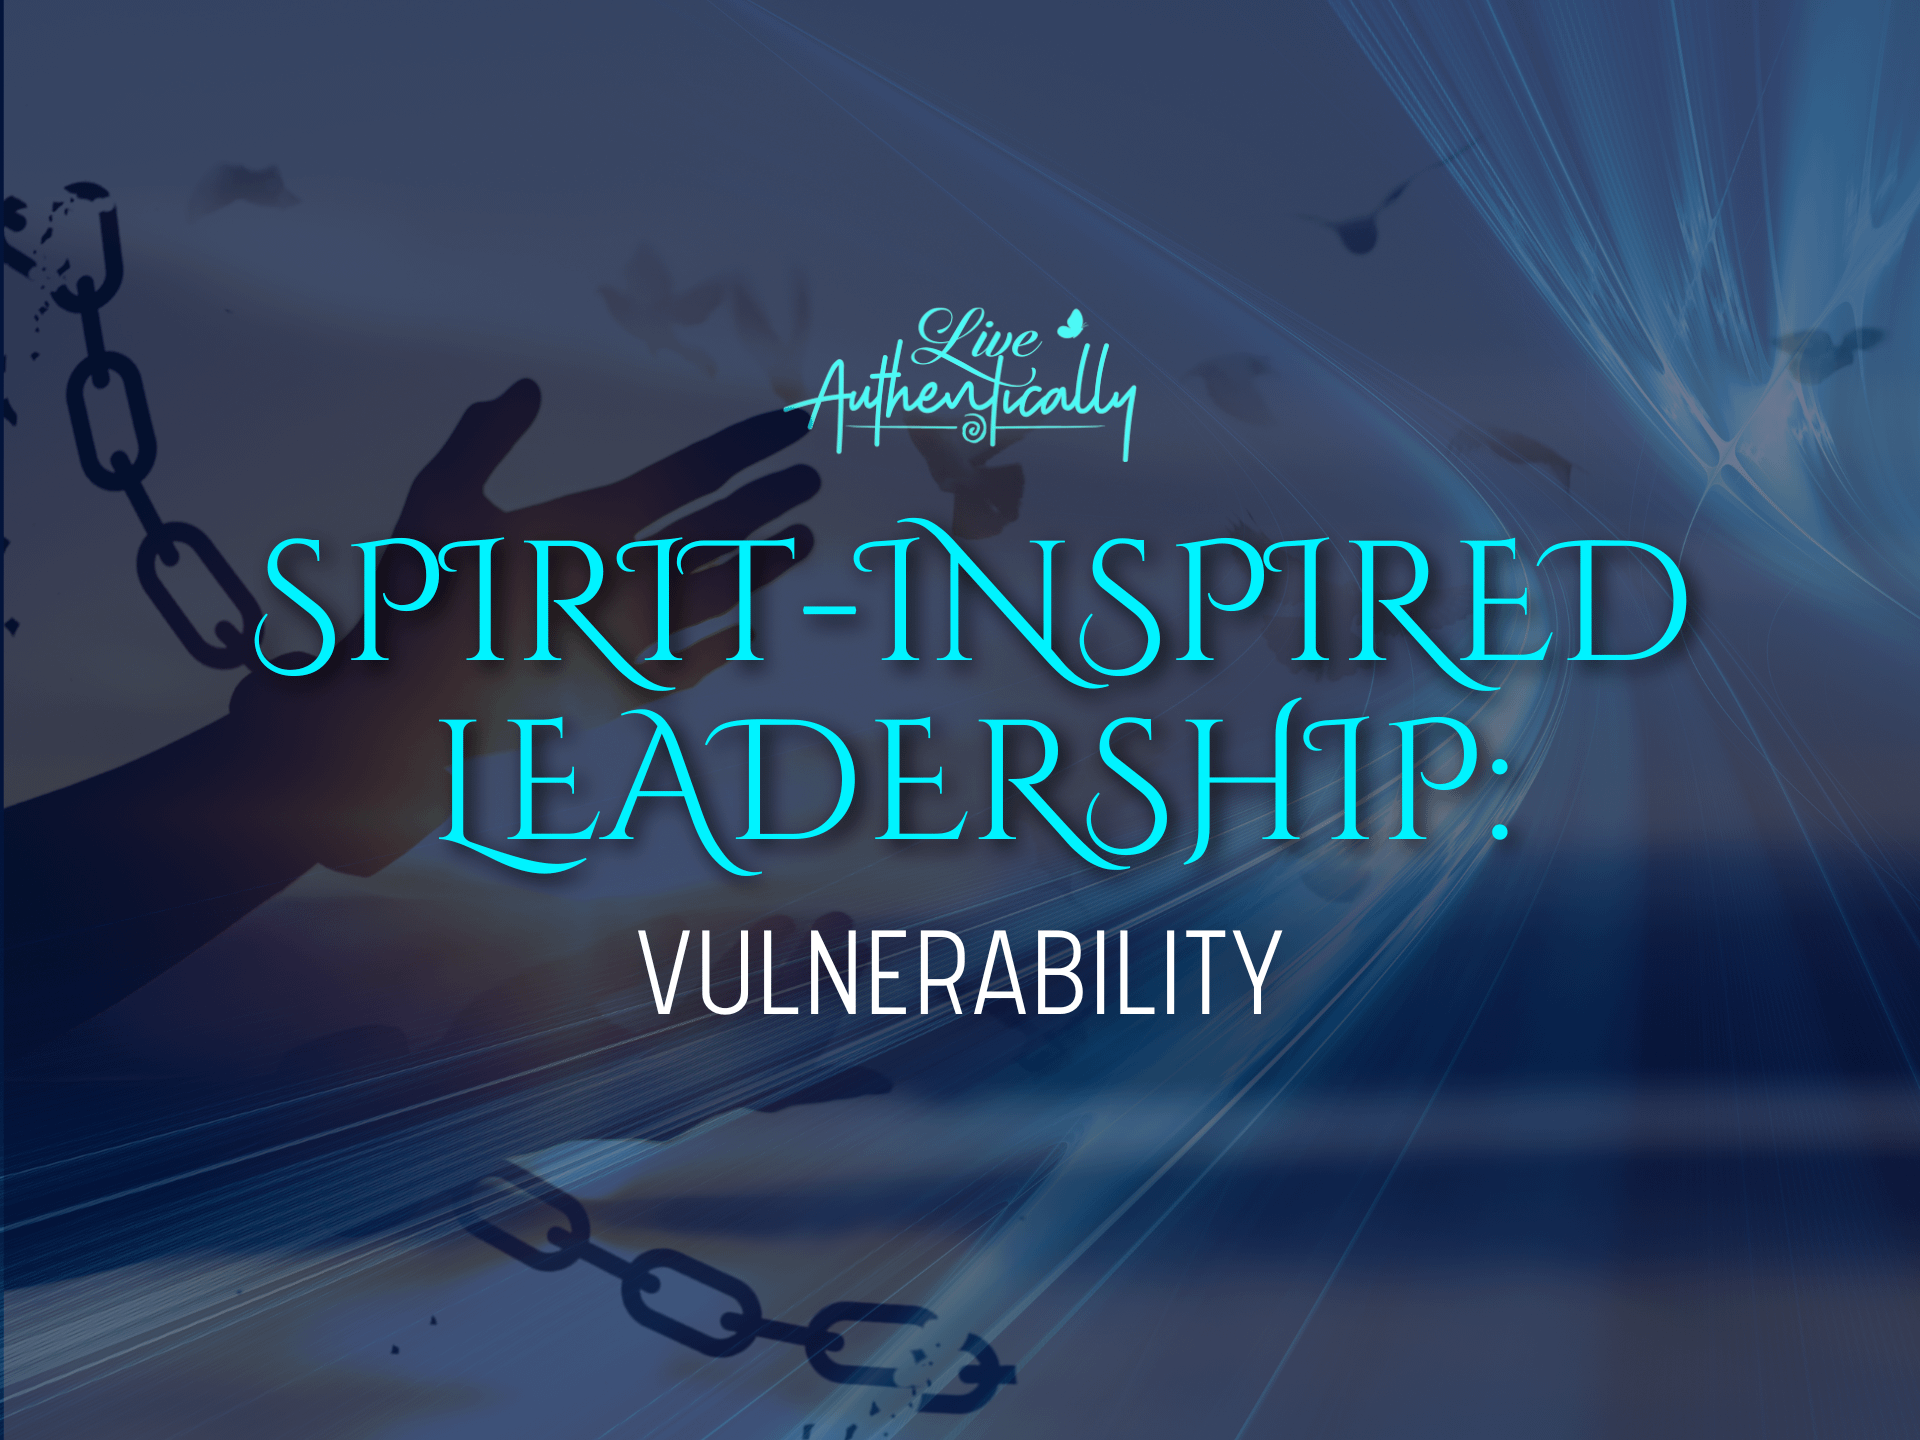 Spirit-Inspired Leadership Vulnerability